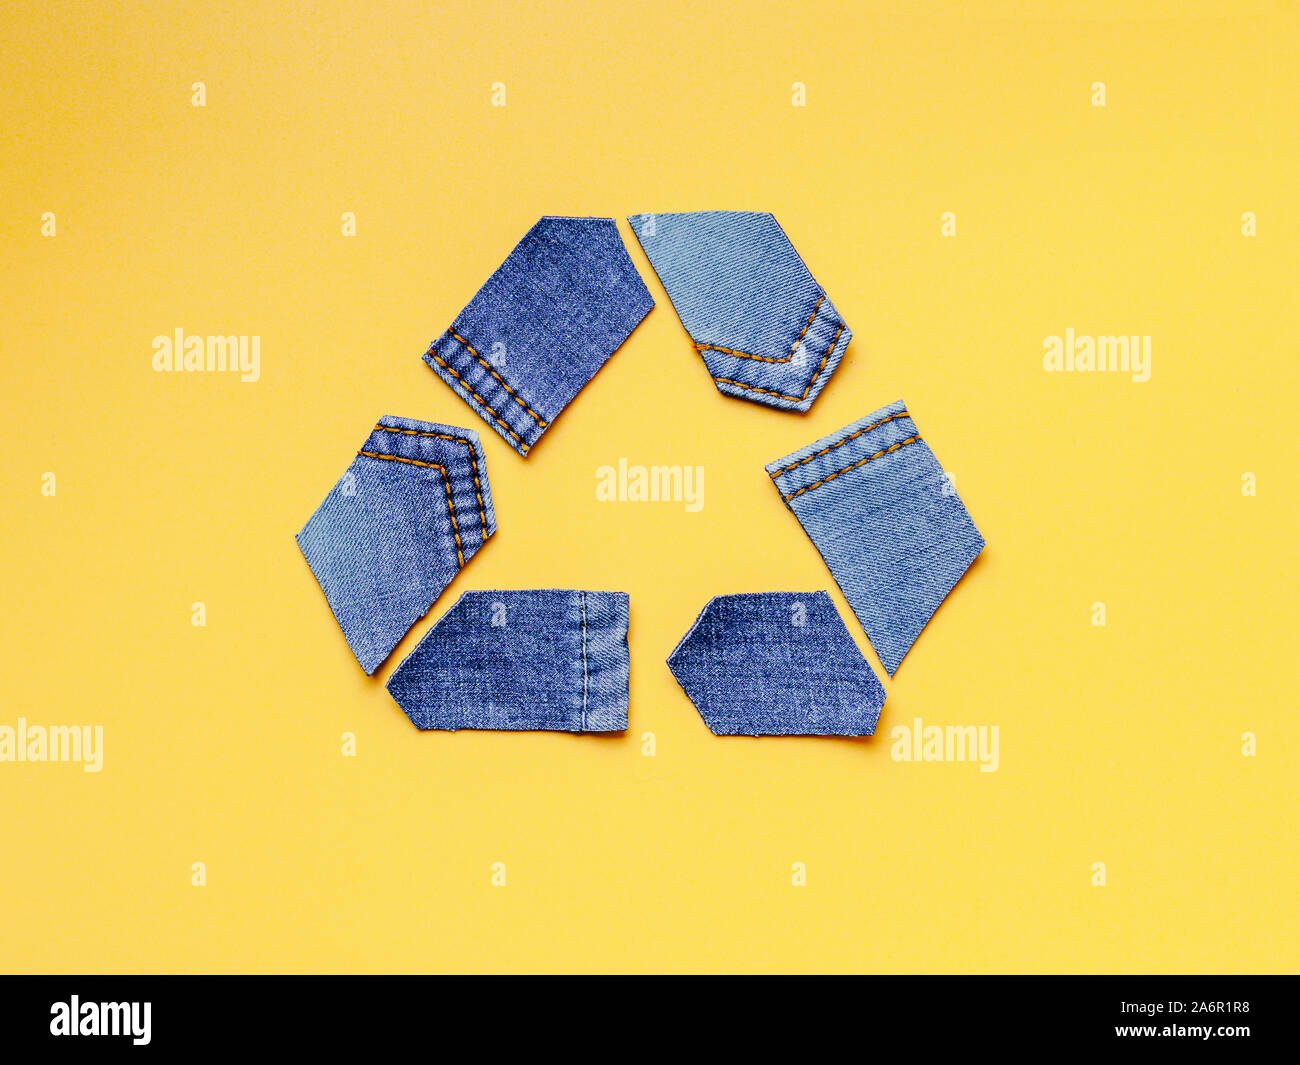 Reducir, reutilizar, reciclar el concepto de fondo. Símbolo de reciclado de viejos jeans sobre fondo amarillo. Vista superior plana o de laicos. Foto de stock